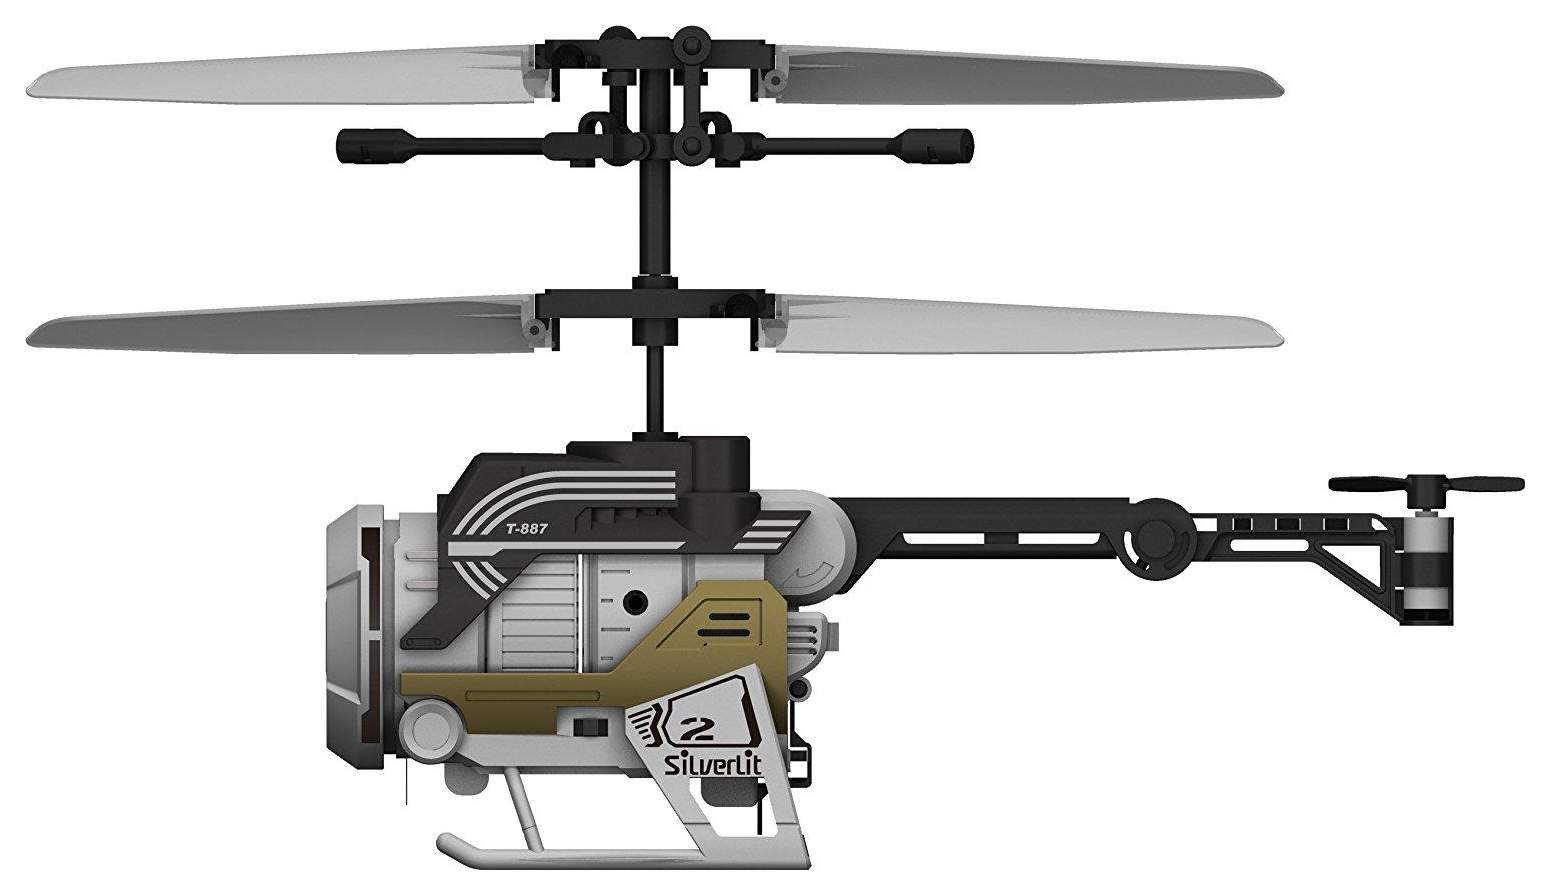 Купить радиоуправляемый вертолет. Как сделать правильный выбор?